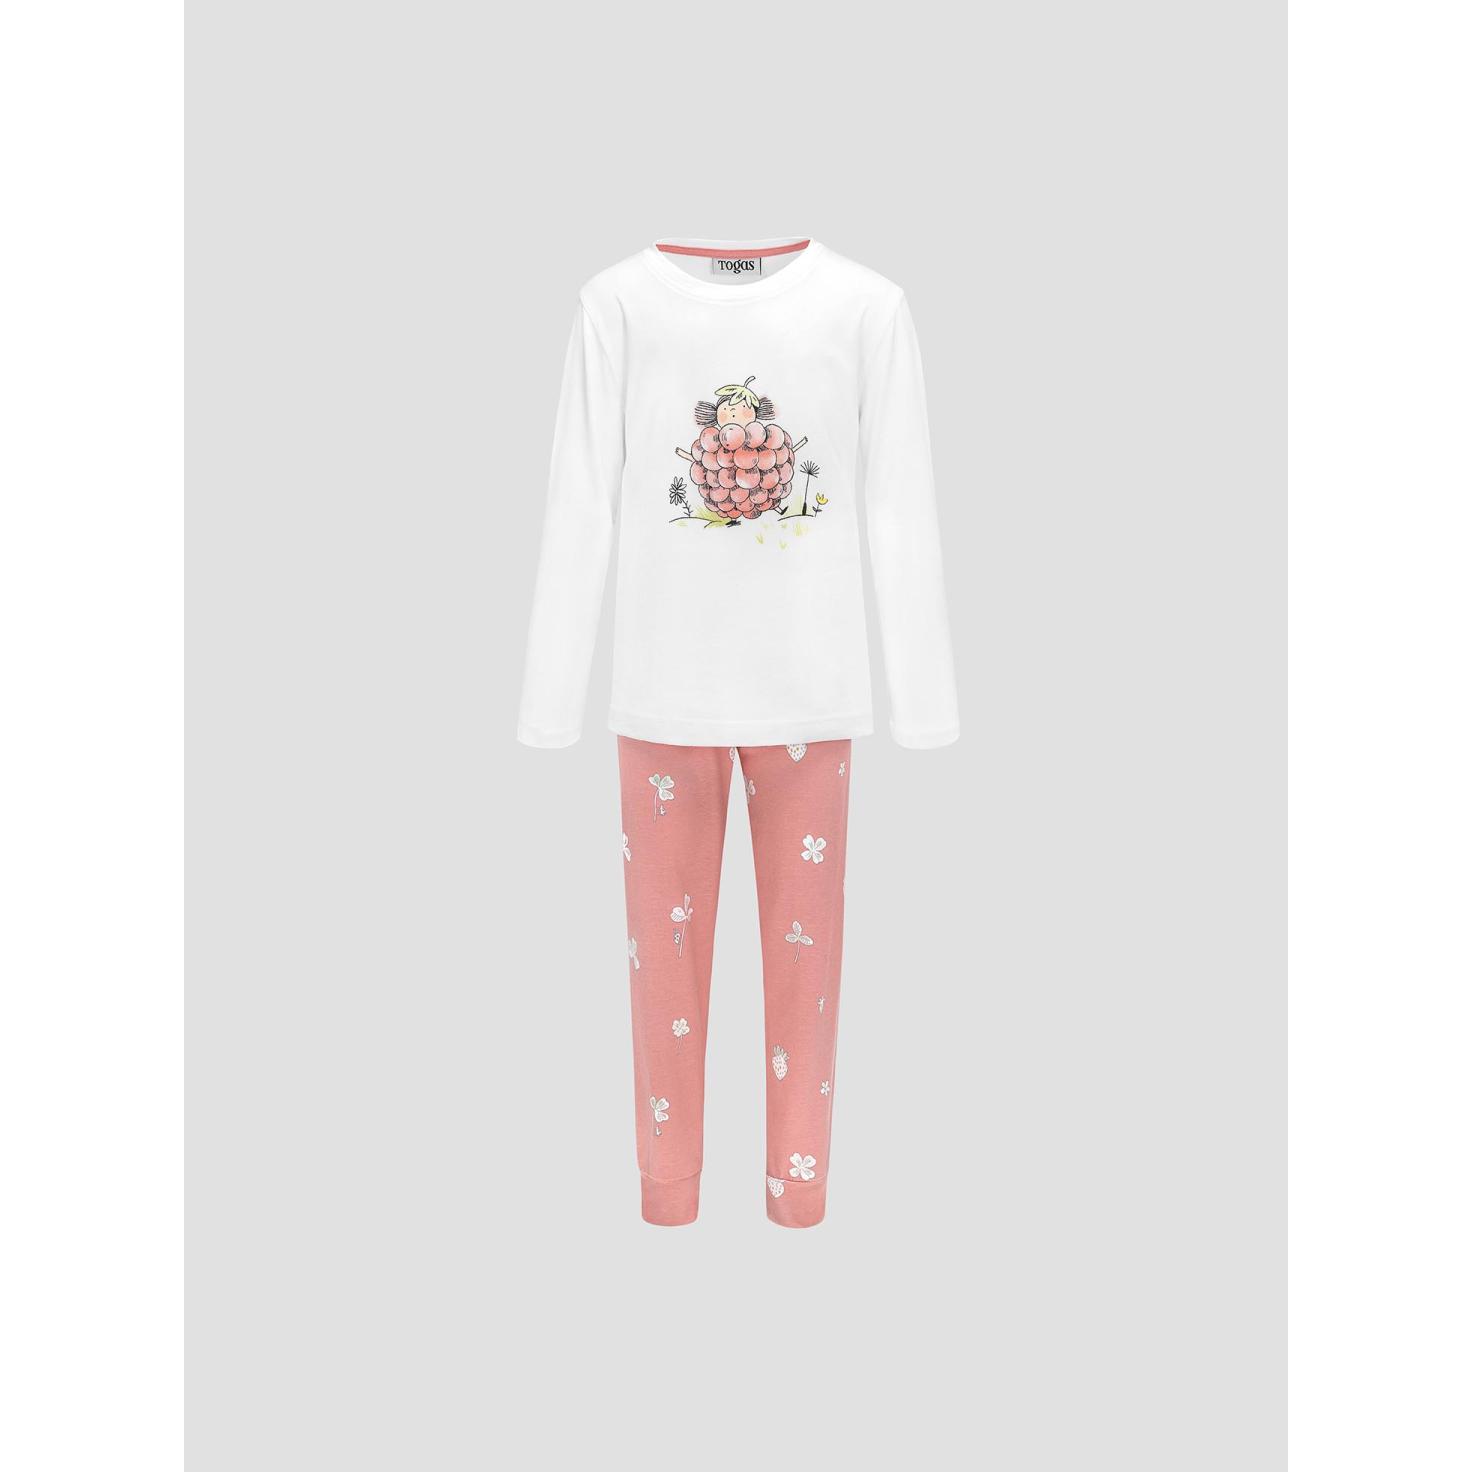 Пижама для девочек Kids by togas Стробби бело-розовый 104-110 см жен пижама с шортами инь янь белый р 52